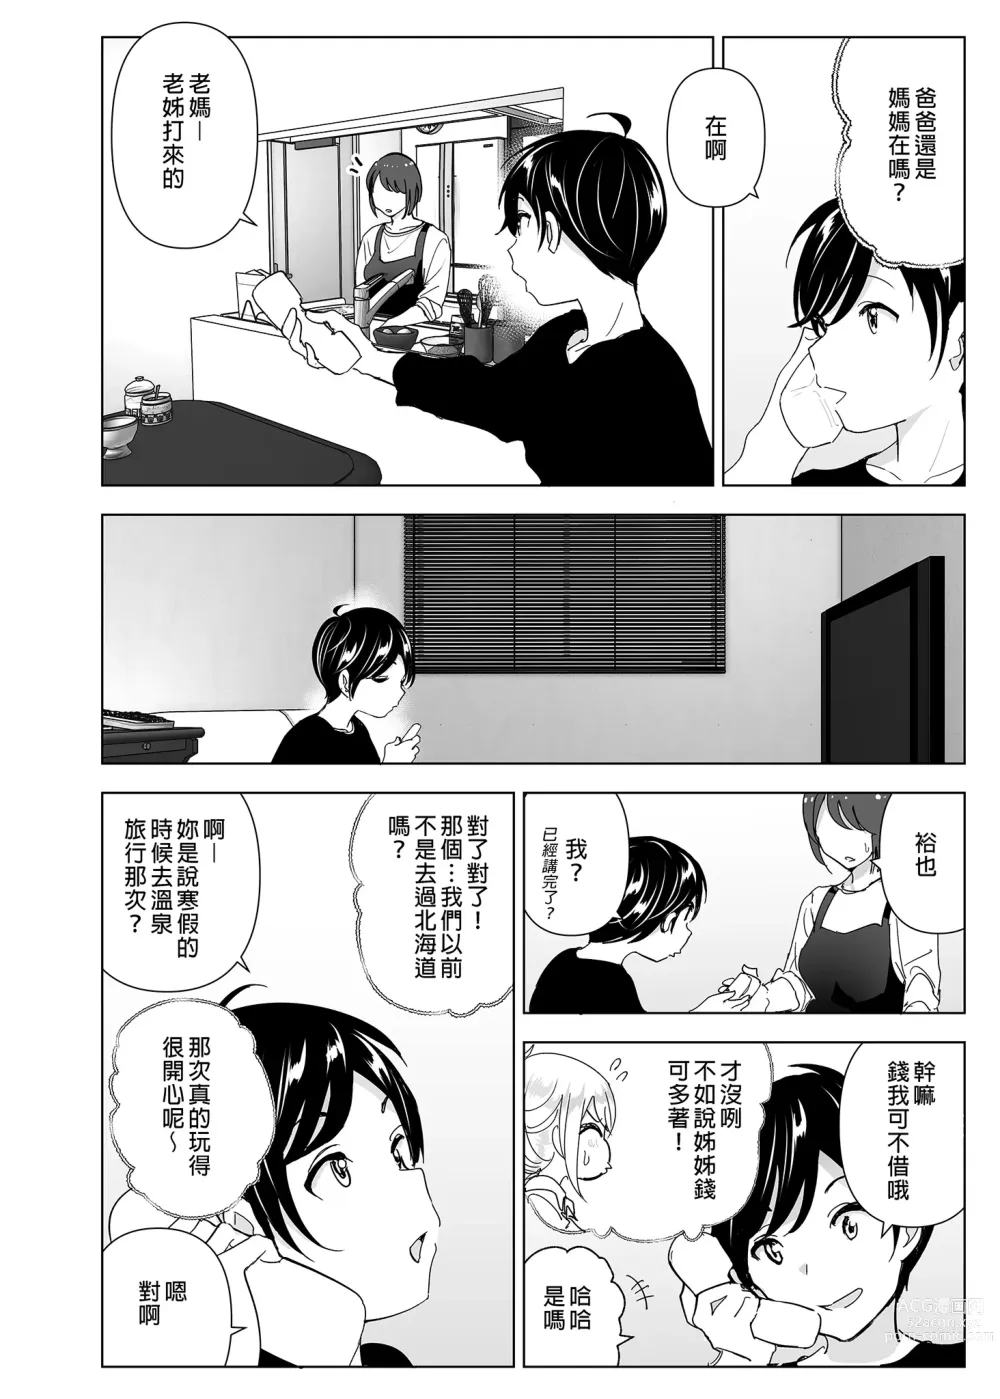 Page 4 of doujinshi 從前很快樂 (decensored)